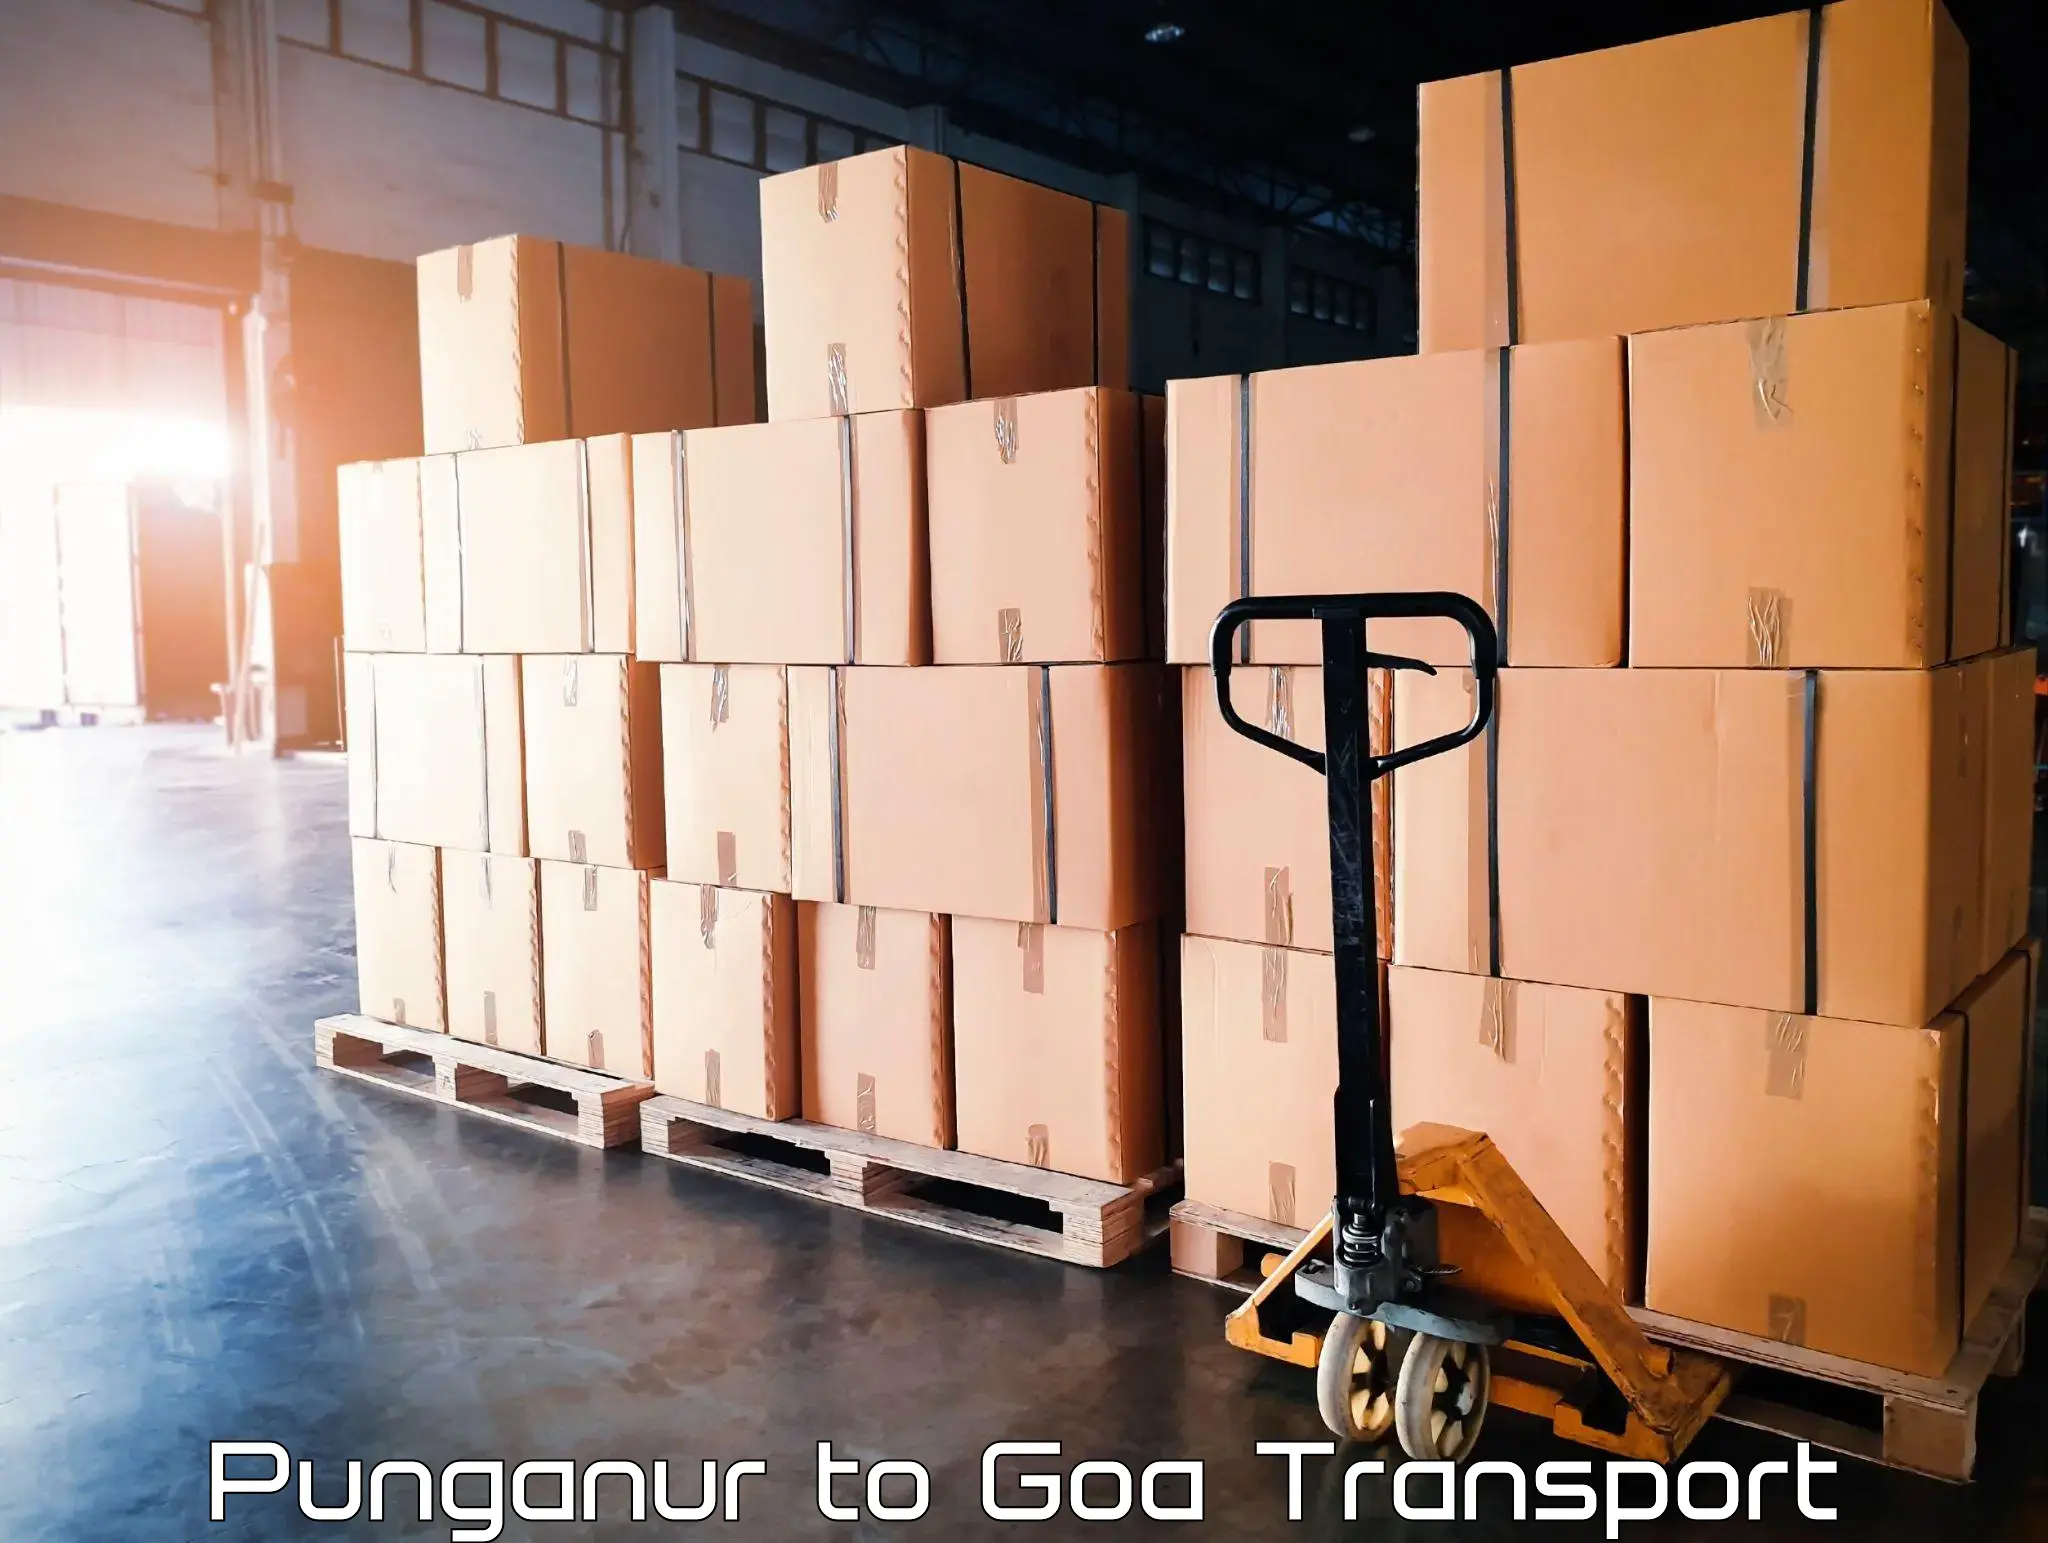 Truck transport companies in India Punganur to Vasco da Gama